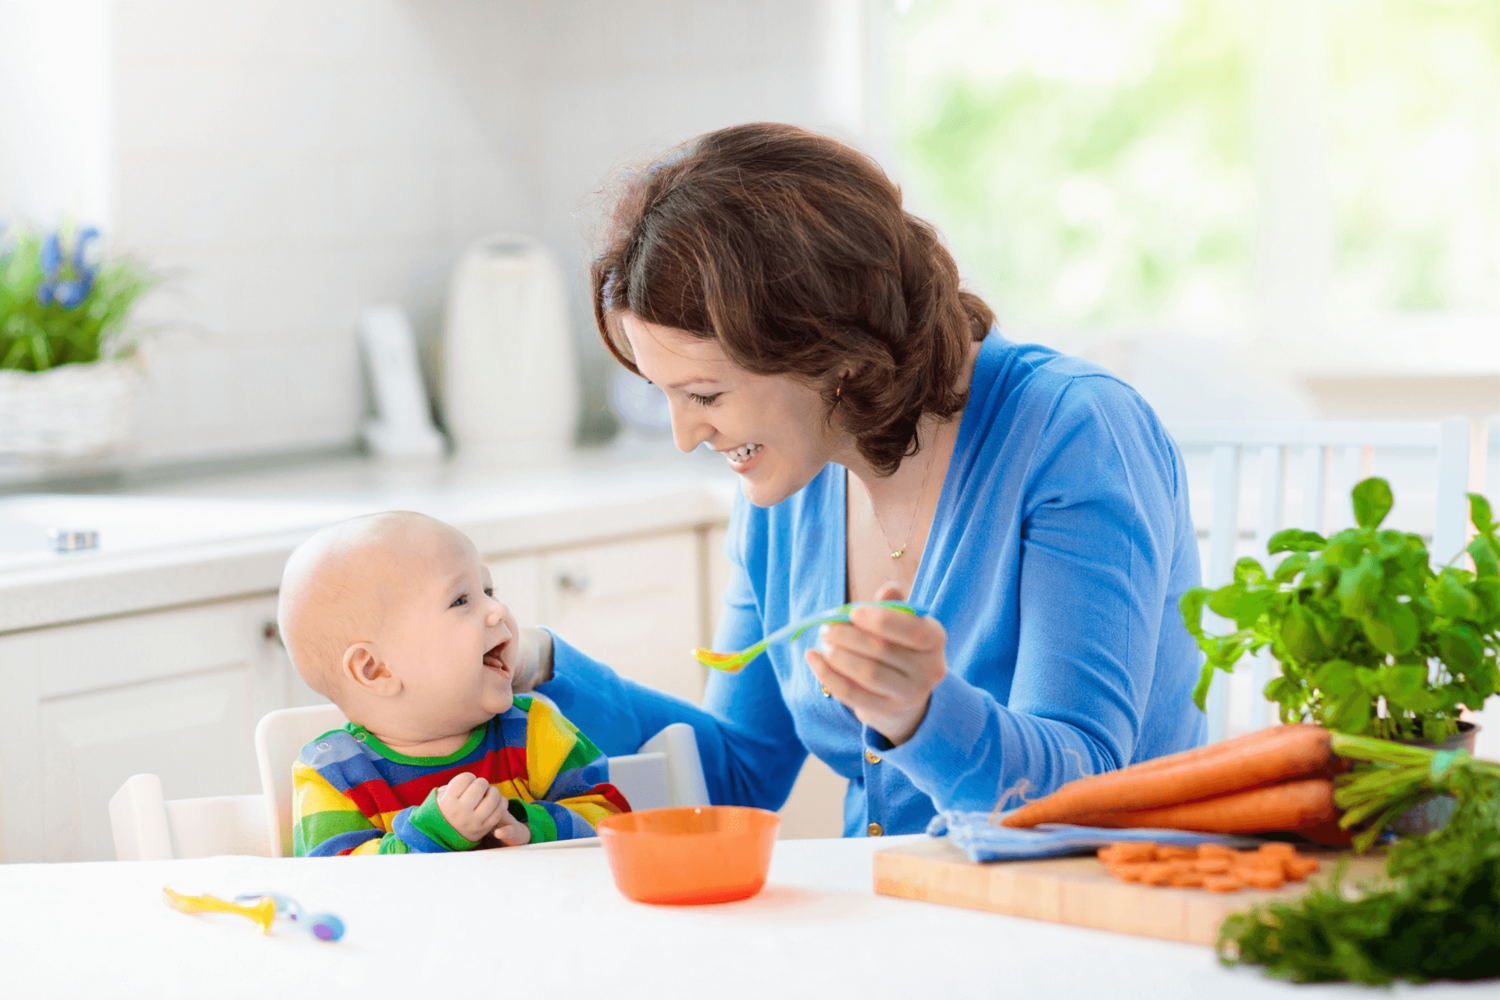 选择婴儿喜欢的有机食品,妈妈节省了加工时间